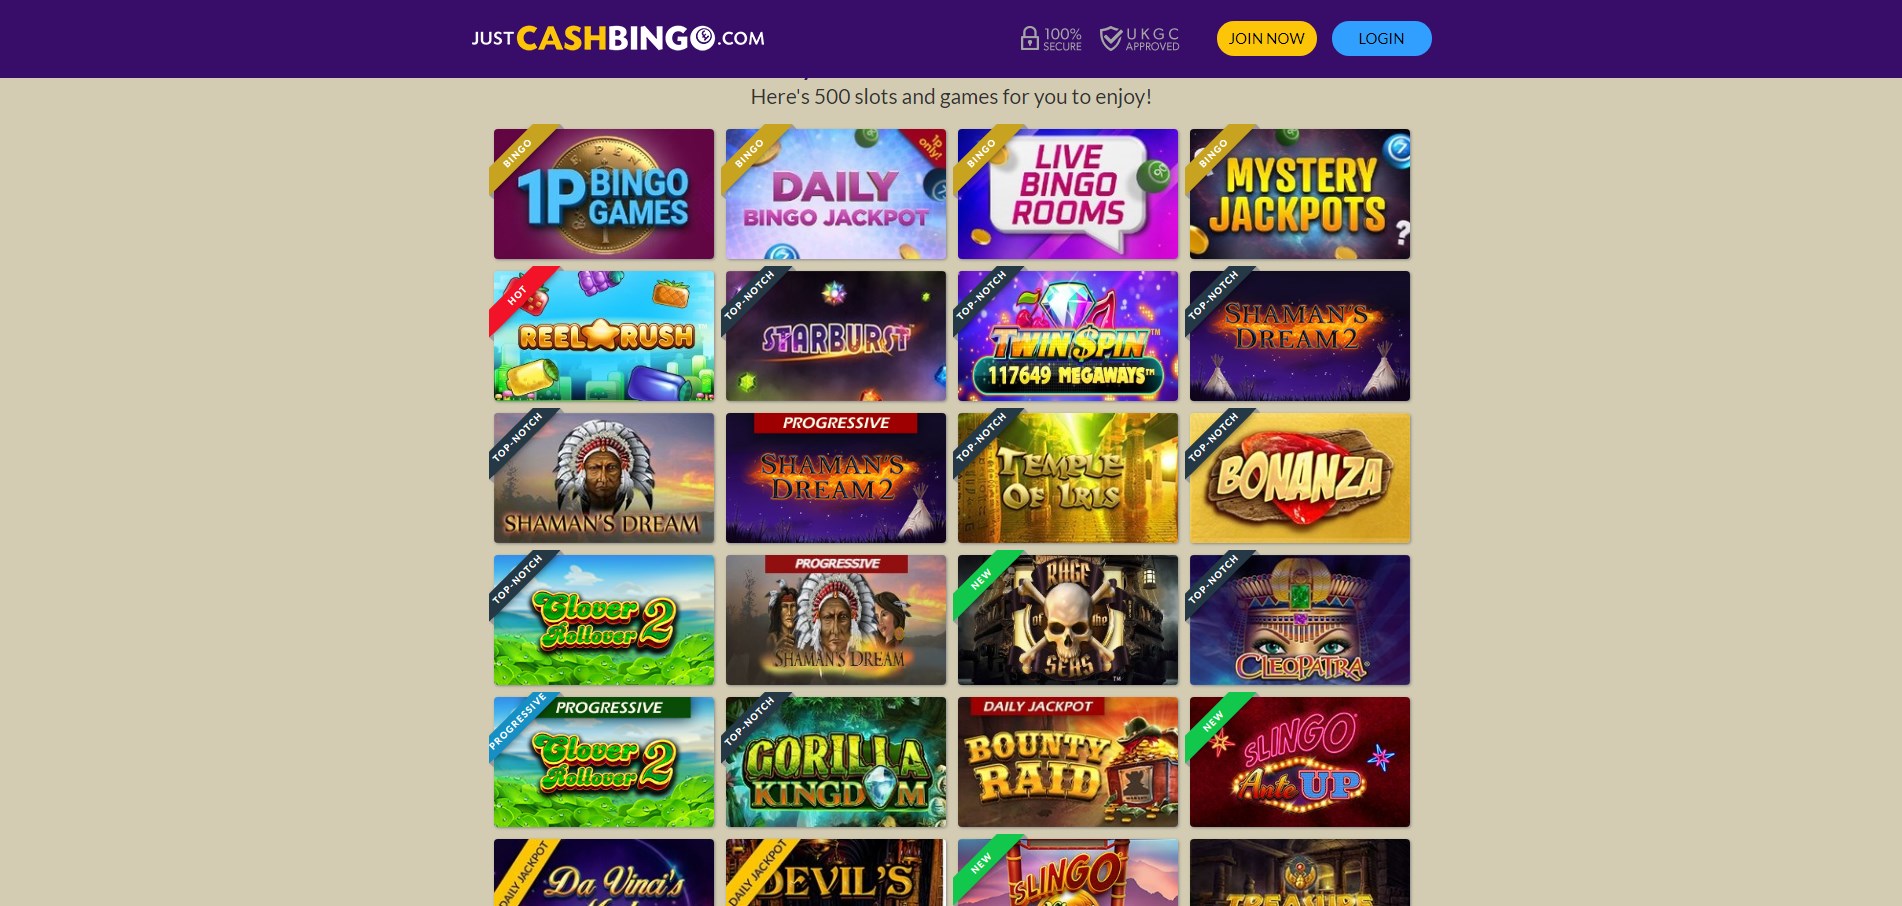 Just Cash Bingo Casino Games